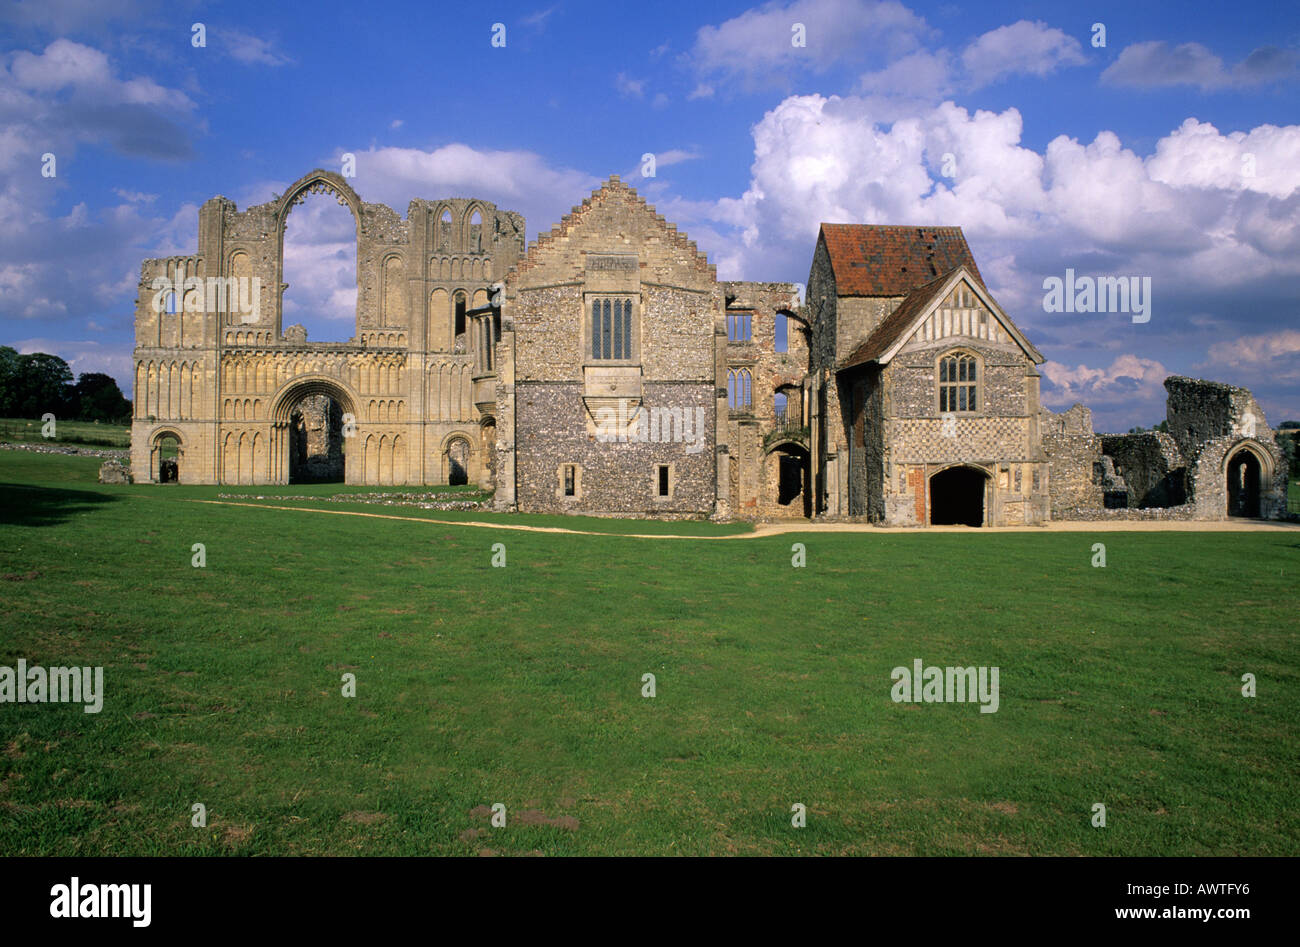 Castle Acre Prieuré, Norfolk, East Anglia, Angleterre, Royaume-Uni, l'architecture médiévale, l'ordre clunisien, monastère, historique, patrimoine, ruines Banque D'Images